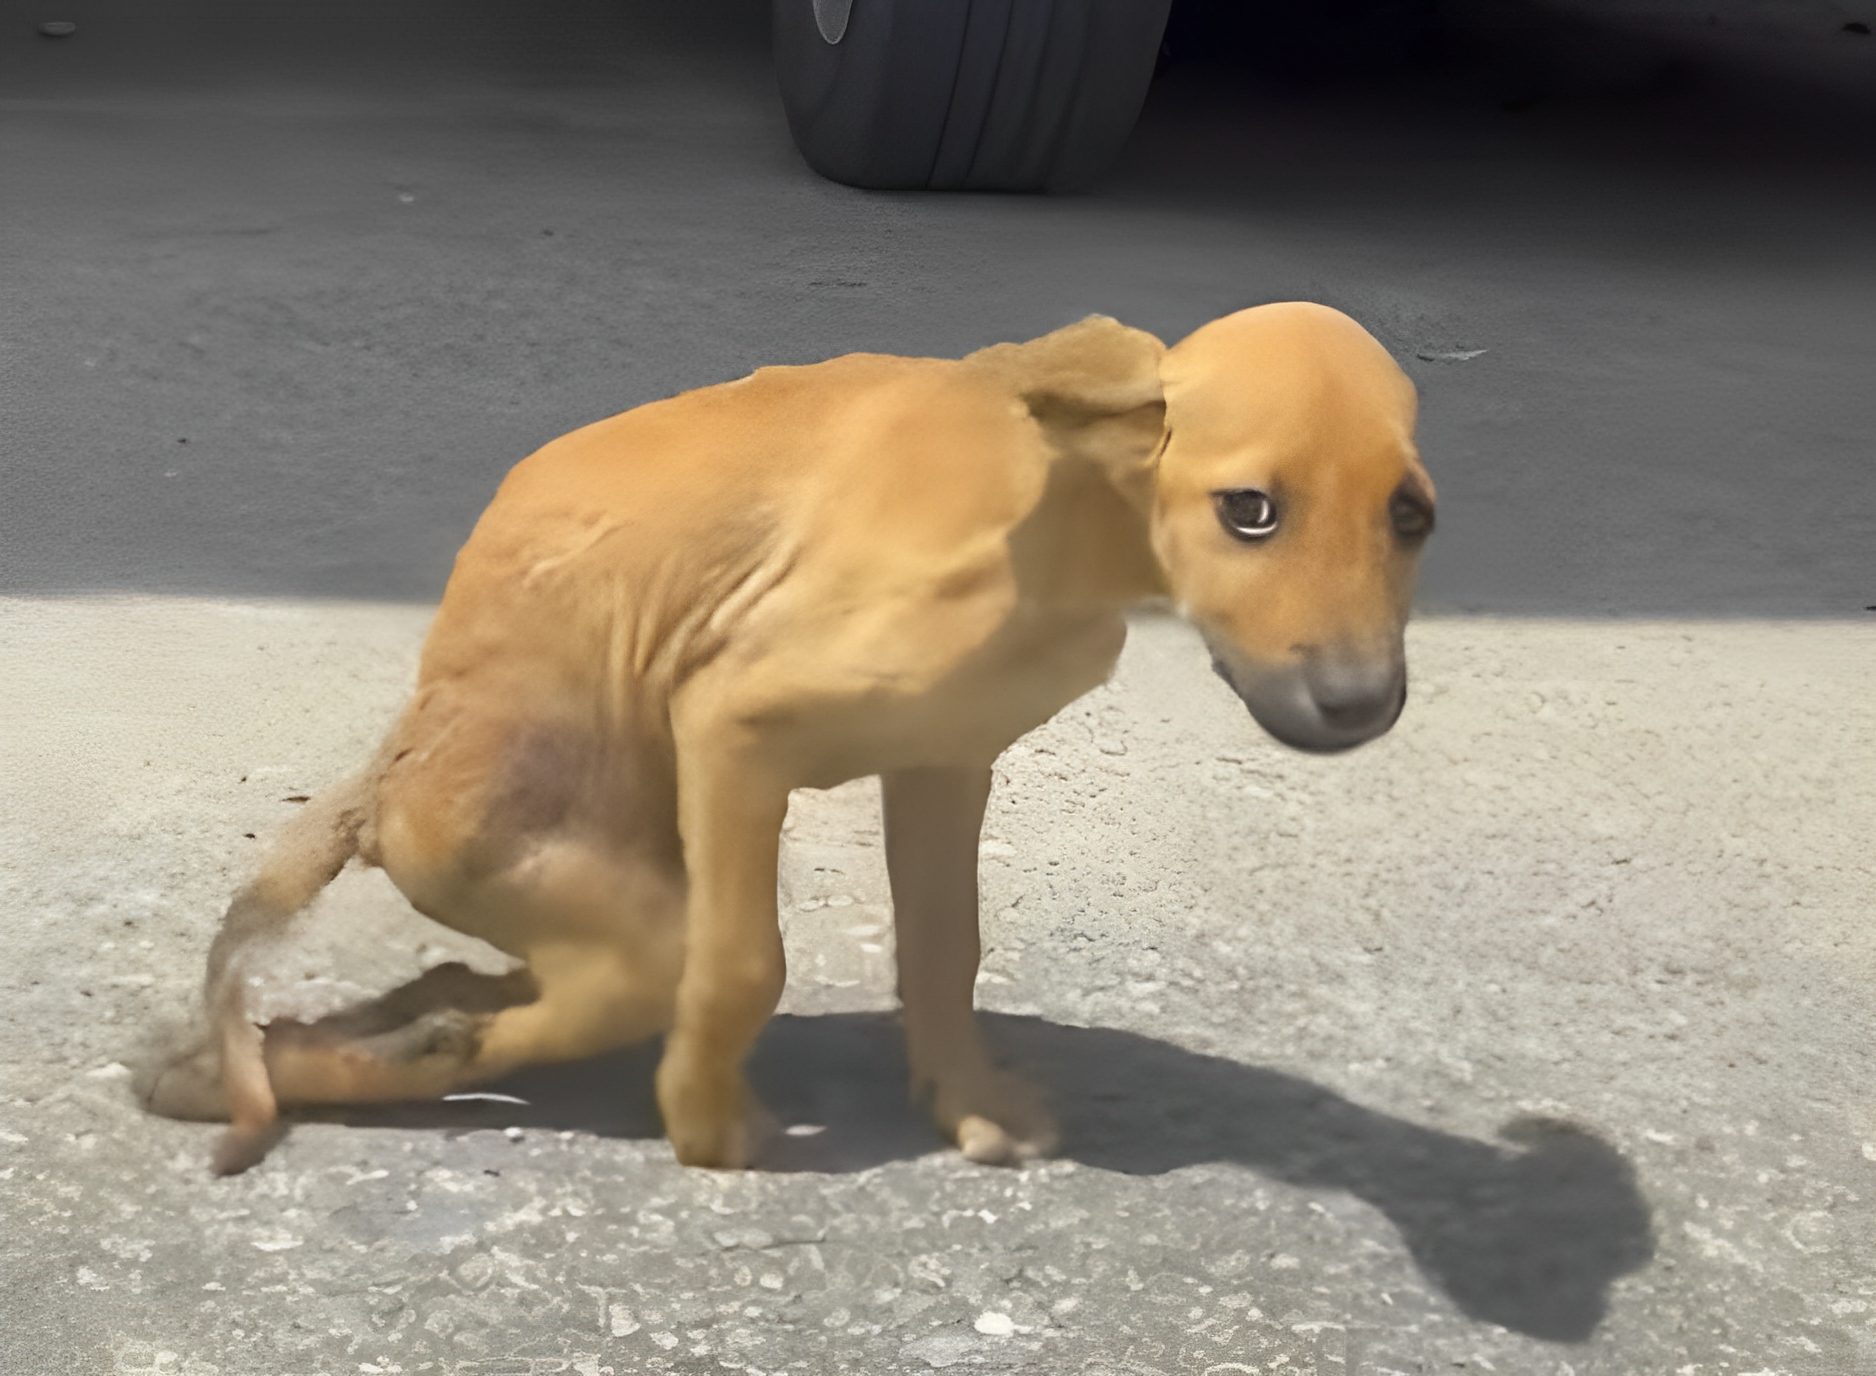 Llamamiento desgarrador: Abandonado e indefenso, un cachorro callejero pide ayuda y evoca simpatía